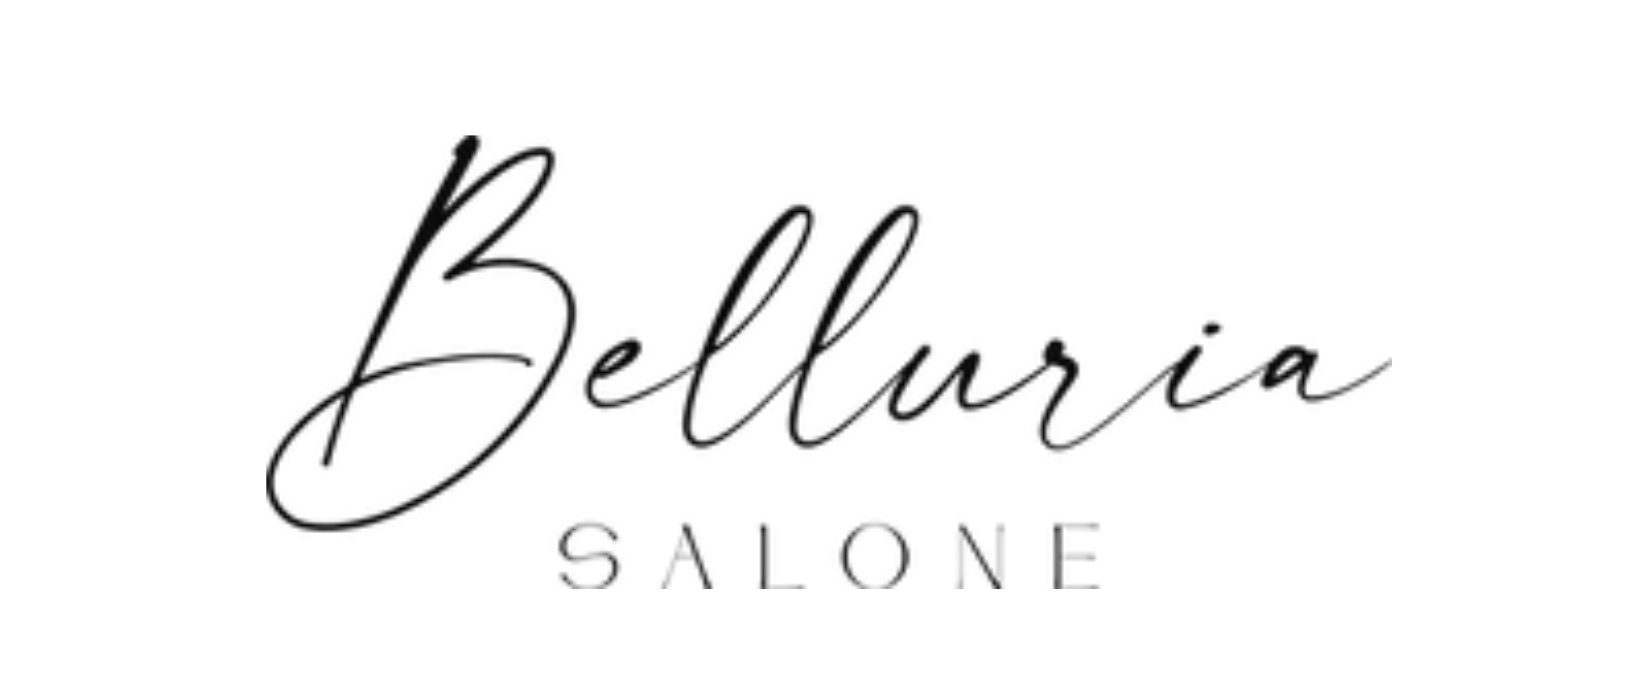 Belluria Salone - nové logo po redizajne